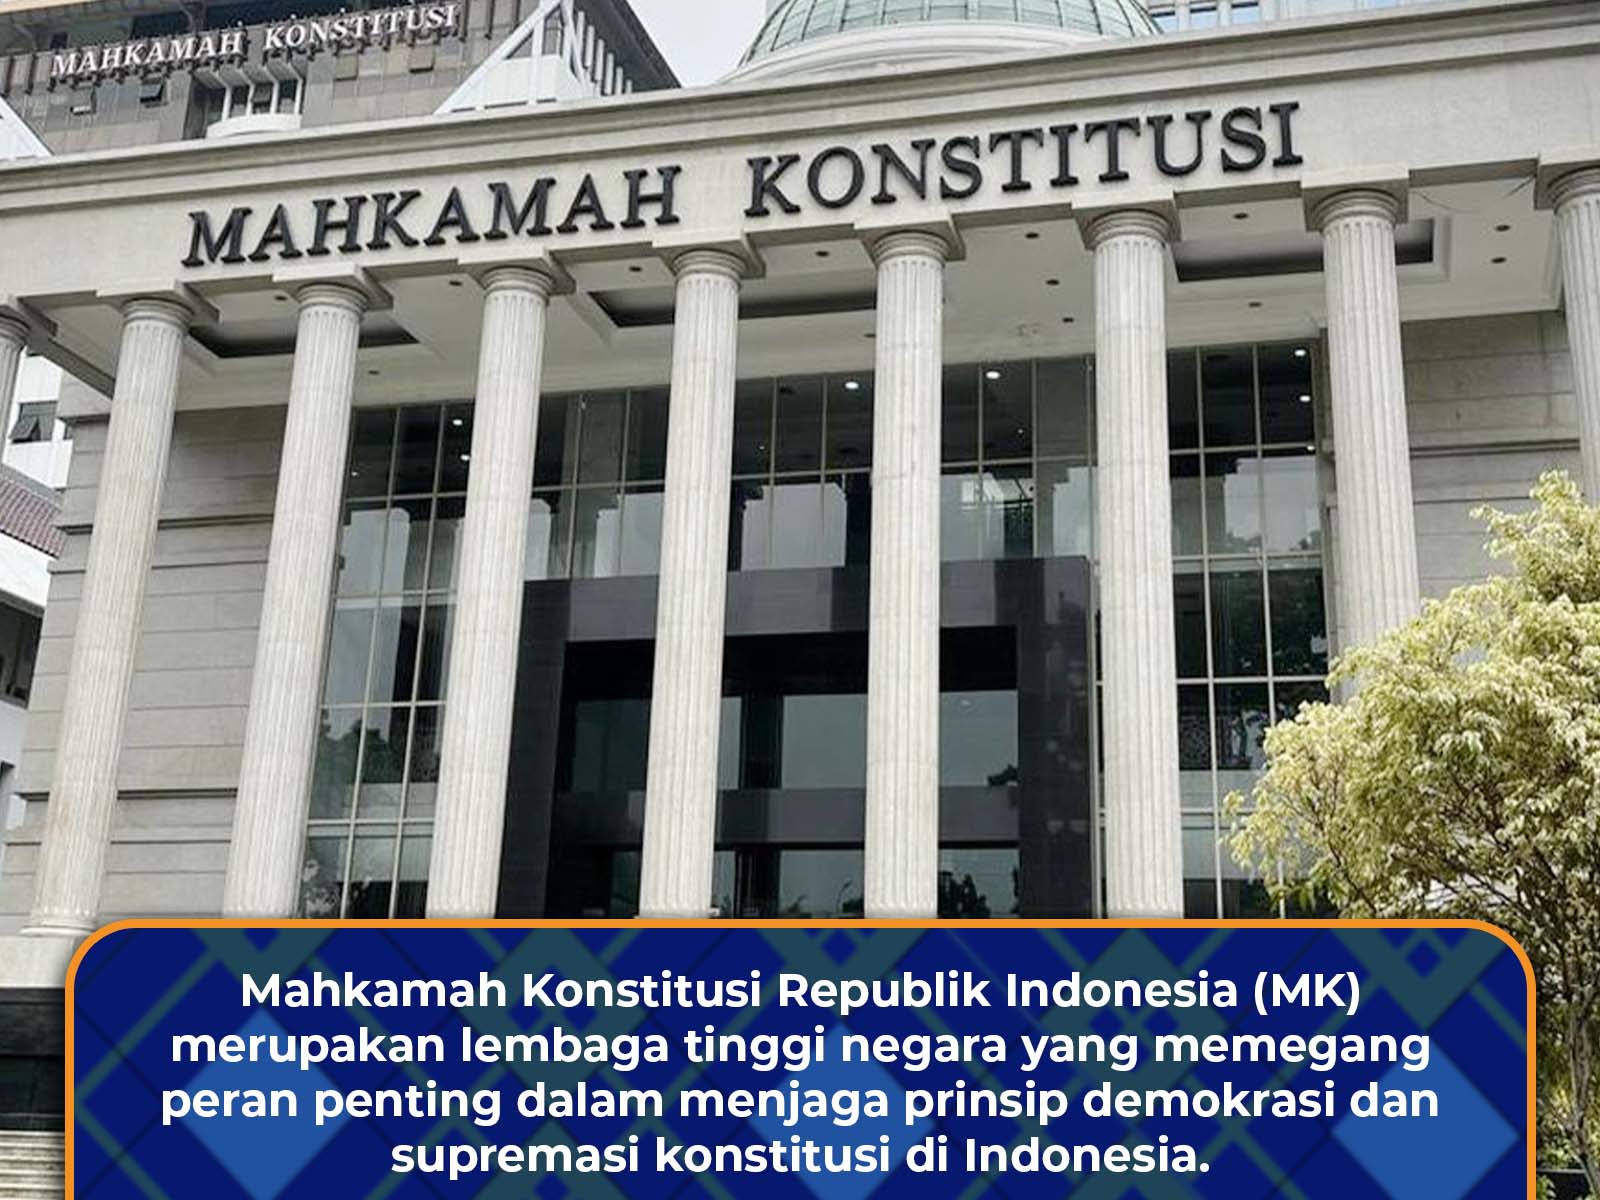 Mahkamah Konstitusi (MK) Kembali Menjadi Sorotan dalam Penegakan Hukum Dan Tata Negara